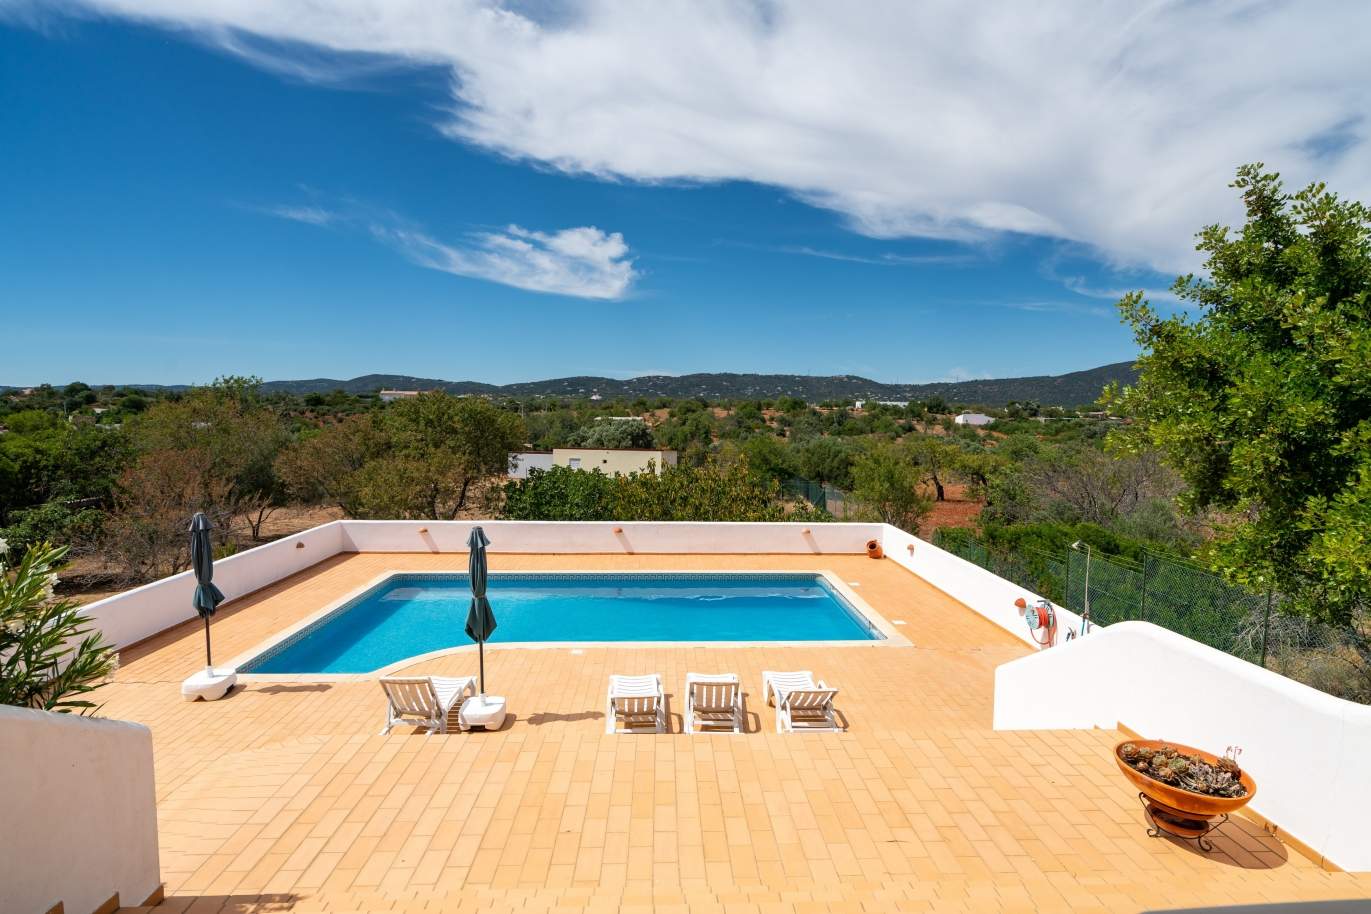 Moradia V4 com piscina, para venda, Quelfes, Olhão, Algarve_144154